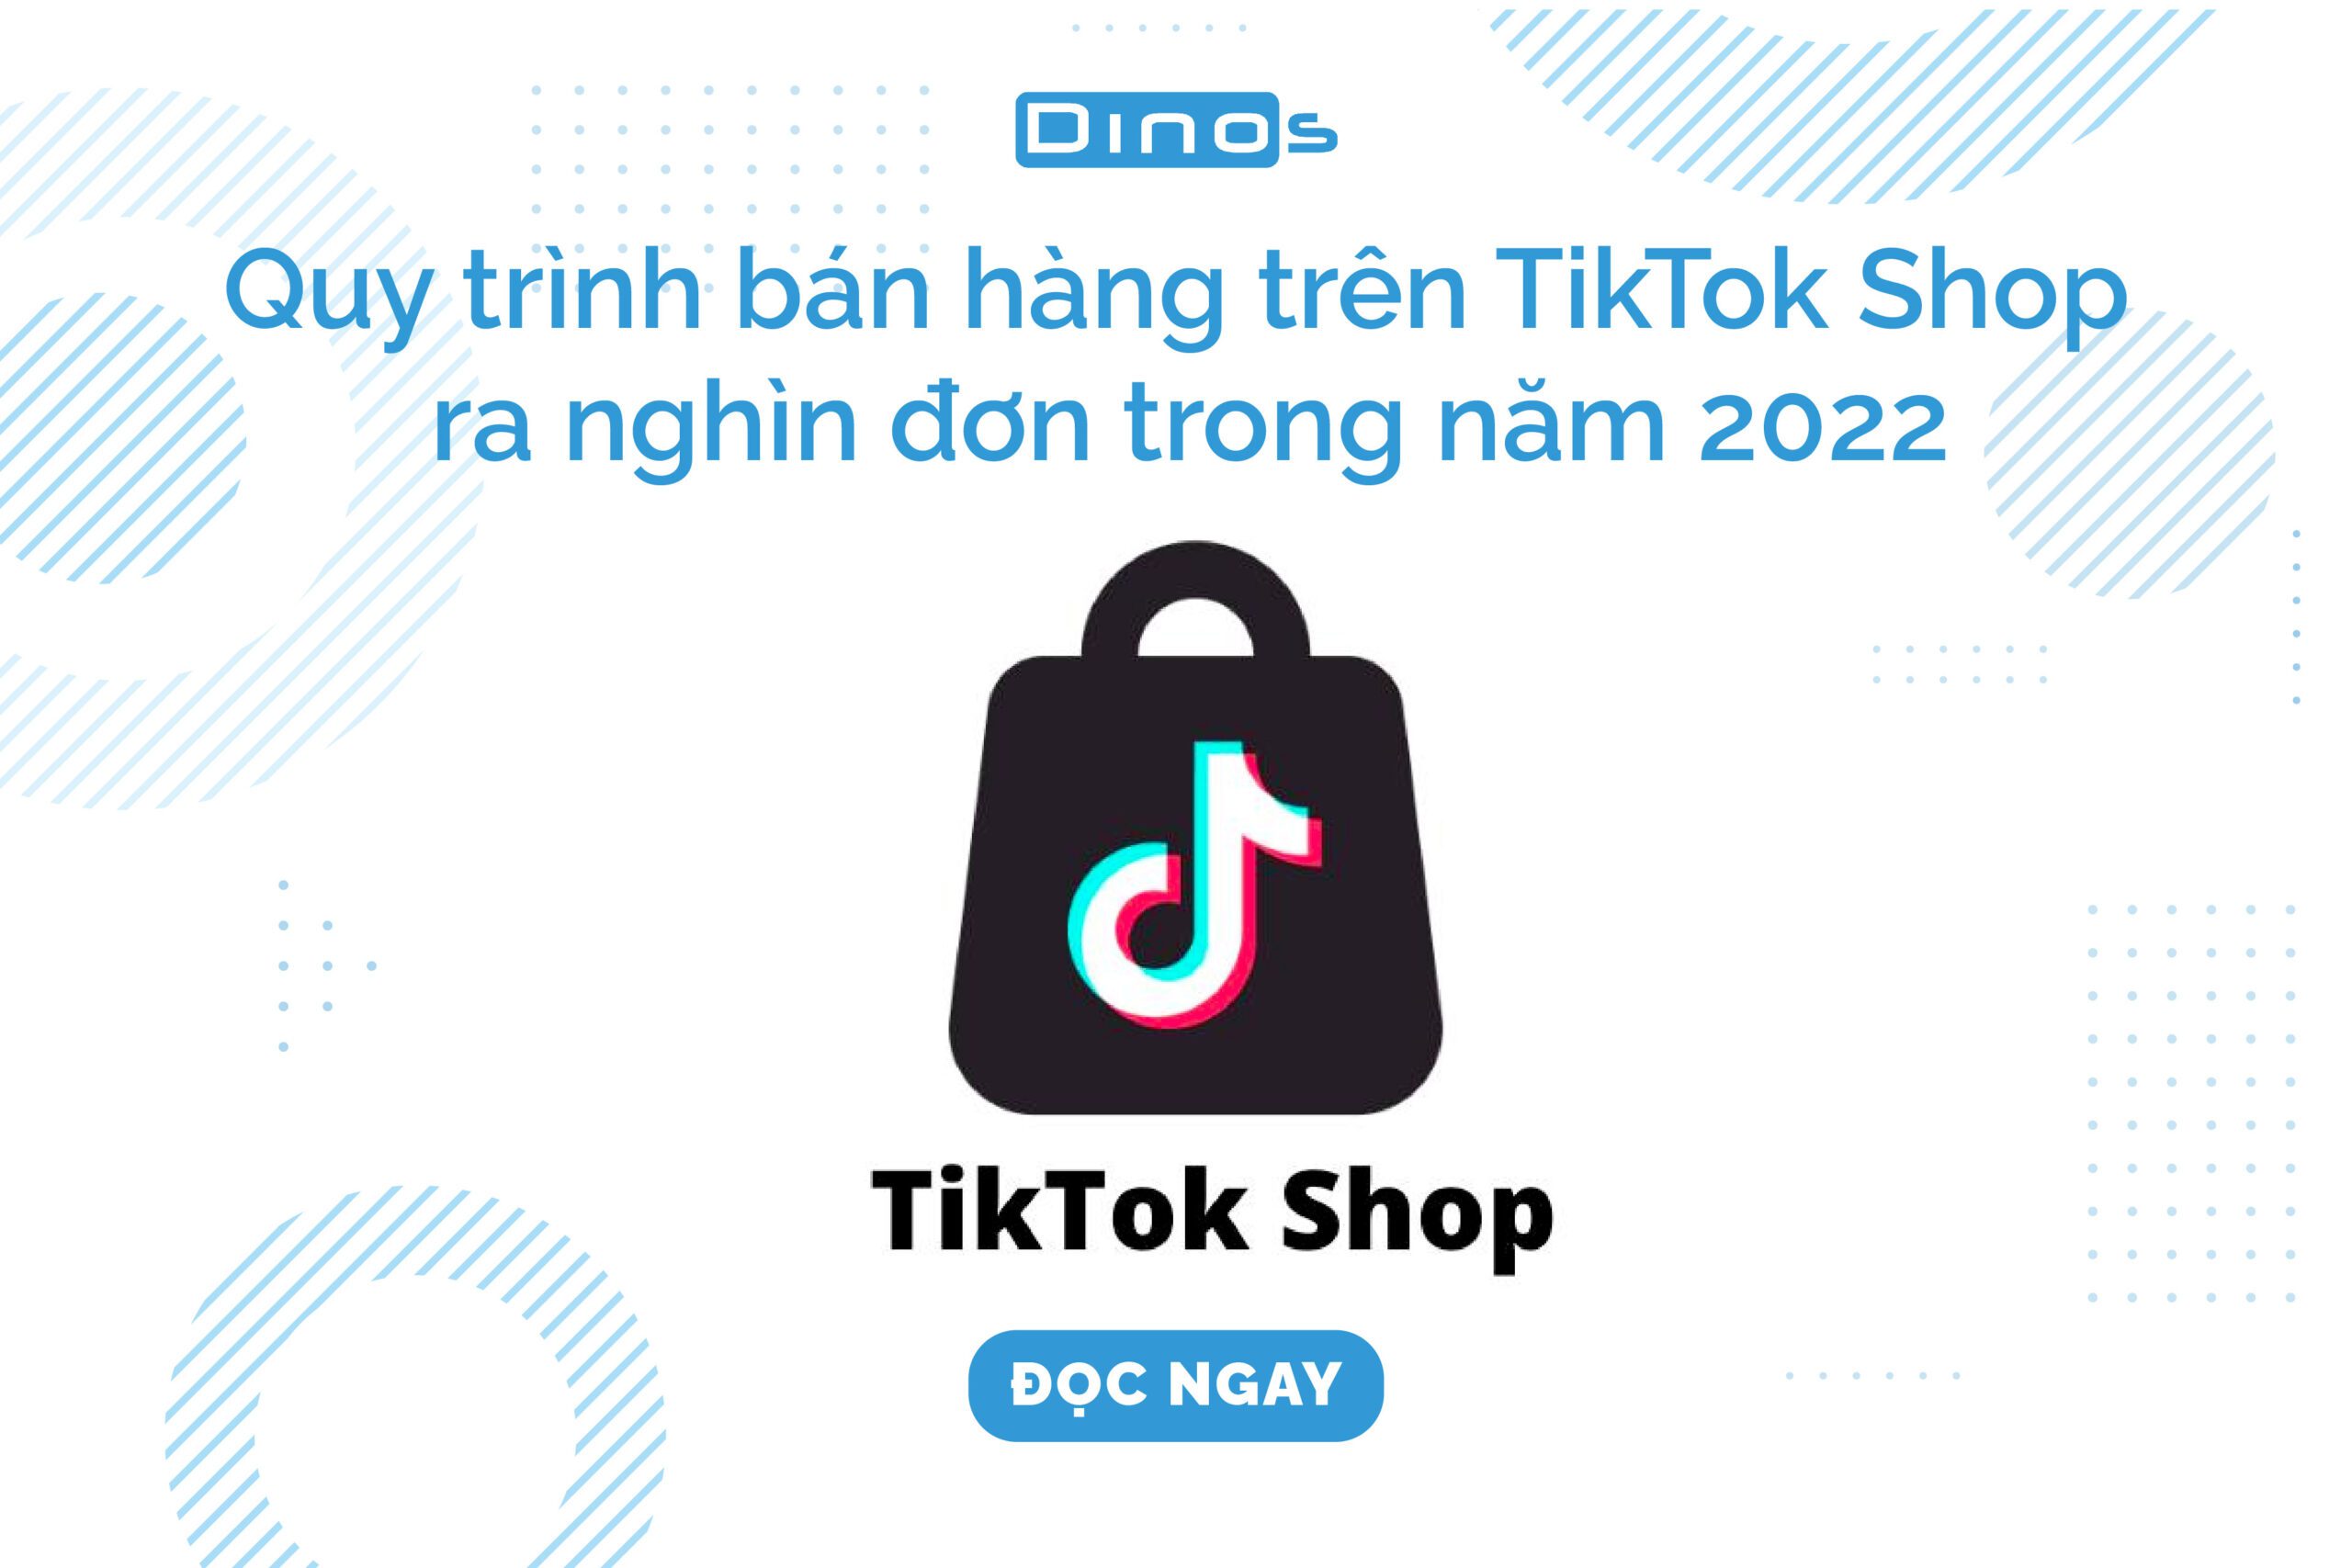 Quy trình bán hàng trên TikTok Shop ra nghìn đơn trong năm 2022